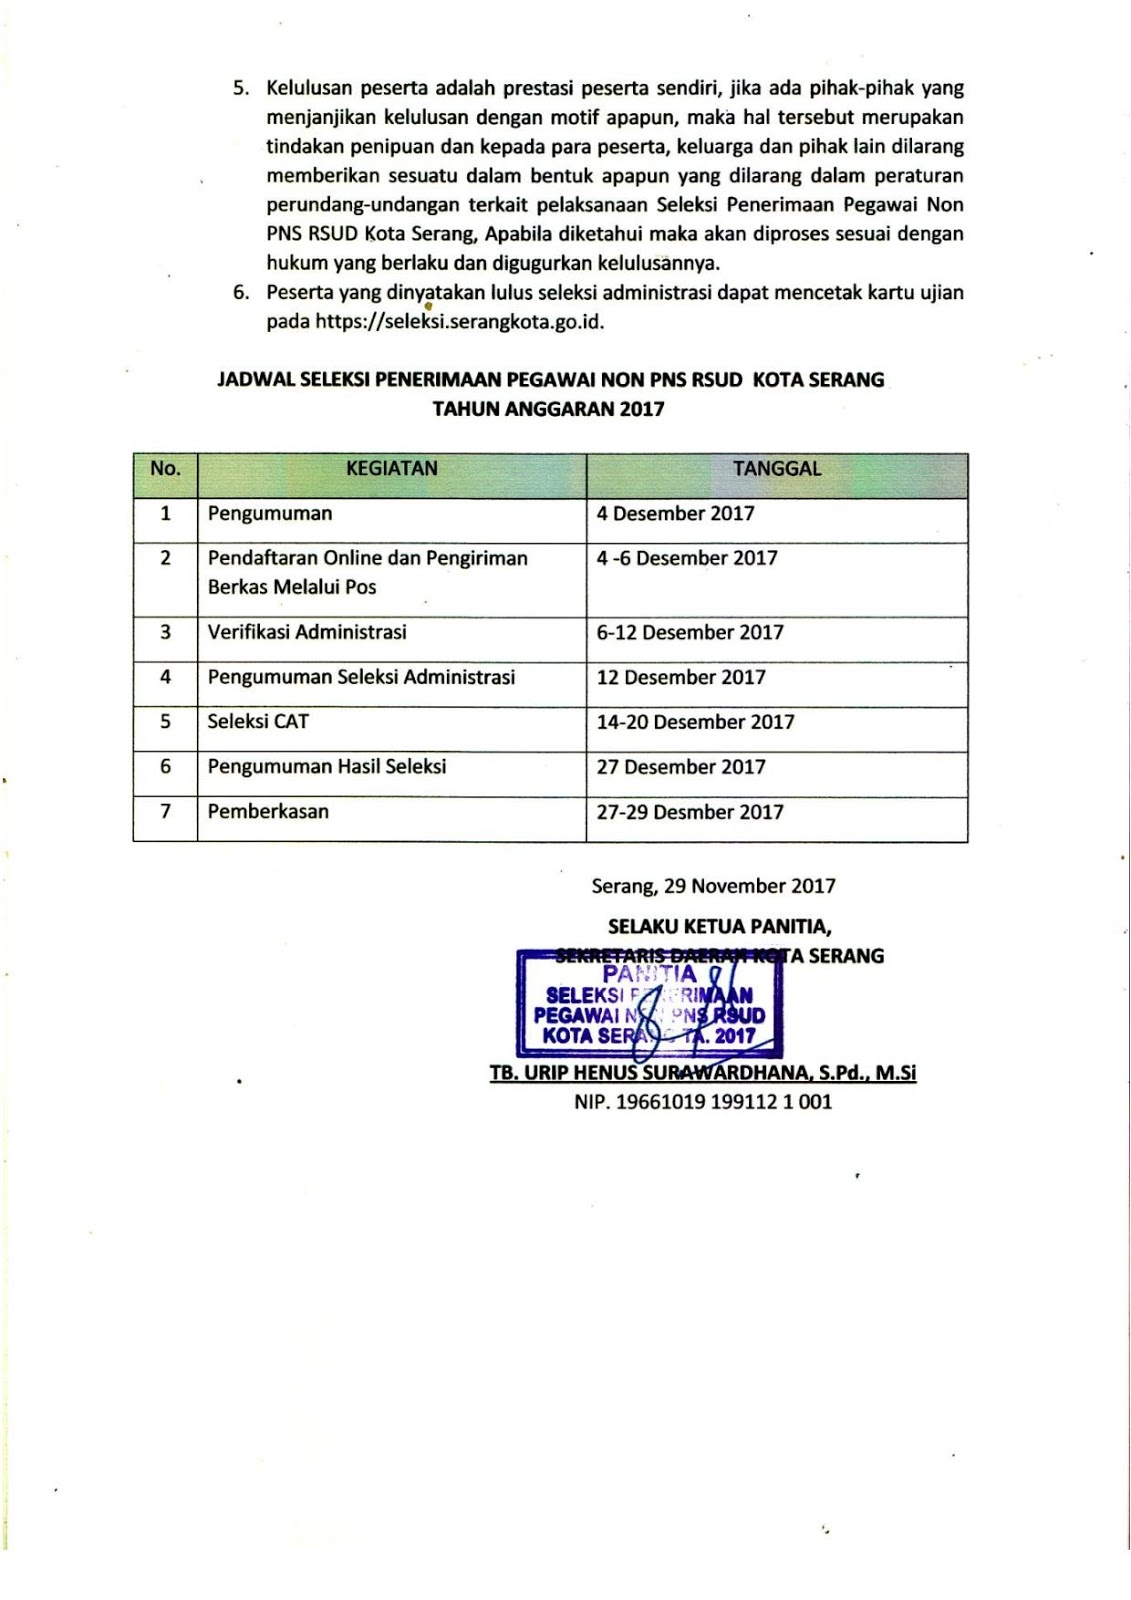 Lowongan Kerja Non PNS di RSUD Kota Serang Tahun 2017/2018